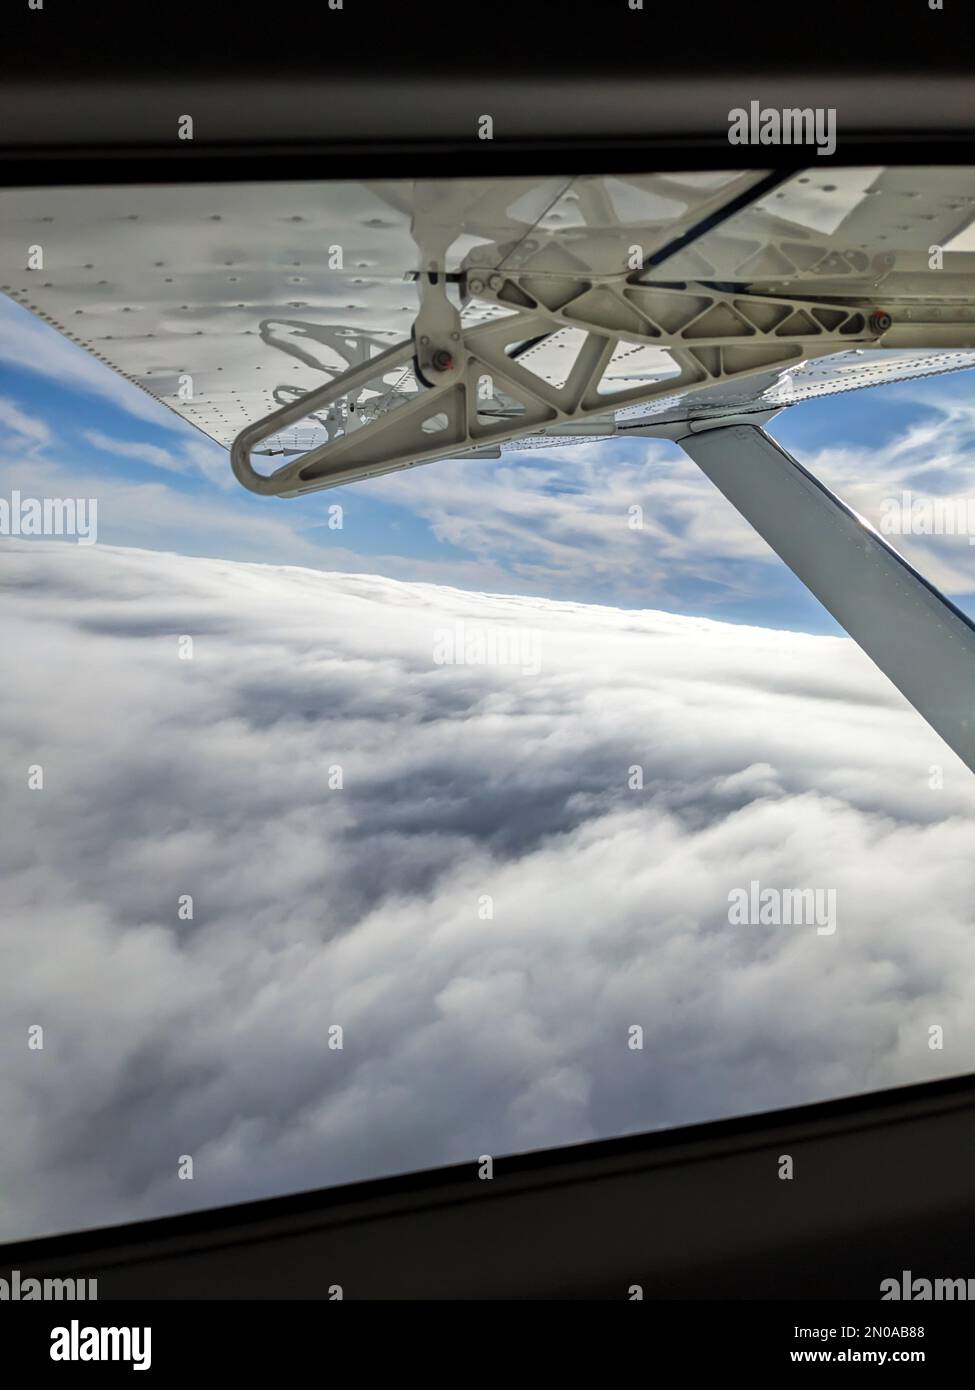 Vue sur la fenêtre depuis un avion léger d'aviation générale. Jambe de force et aile d'un avion semi-cantilever à grande aile survolant les nuages par une journée ensoleillée. Banque D'Images